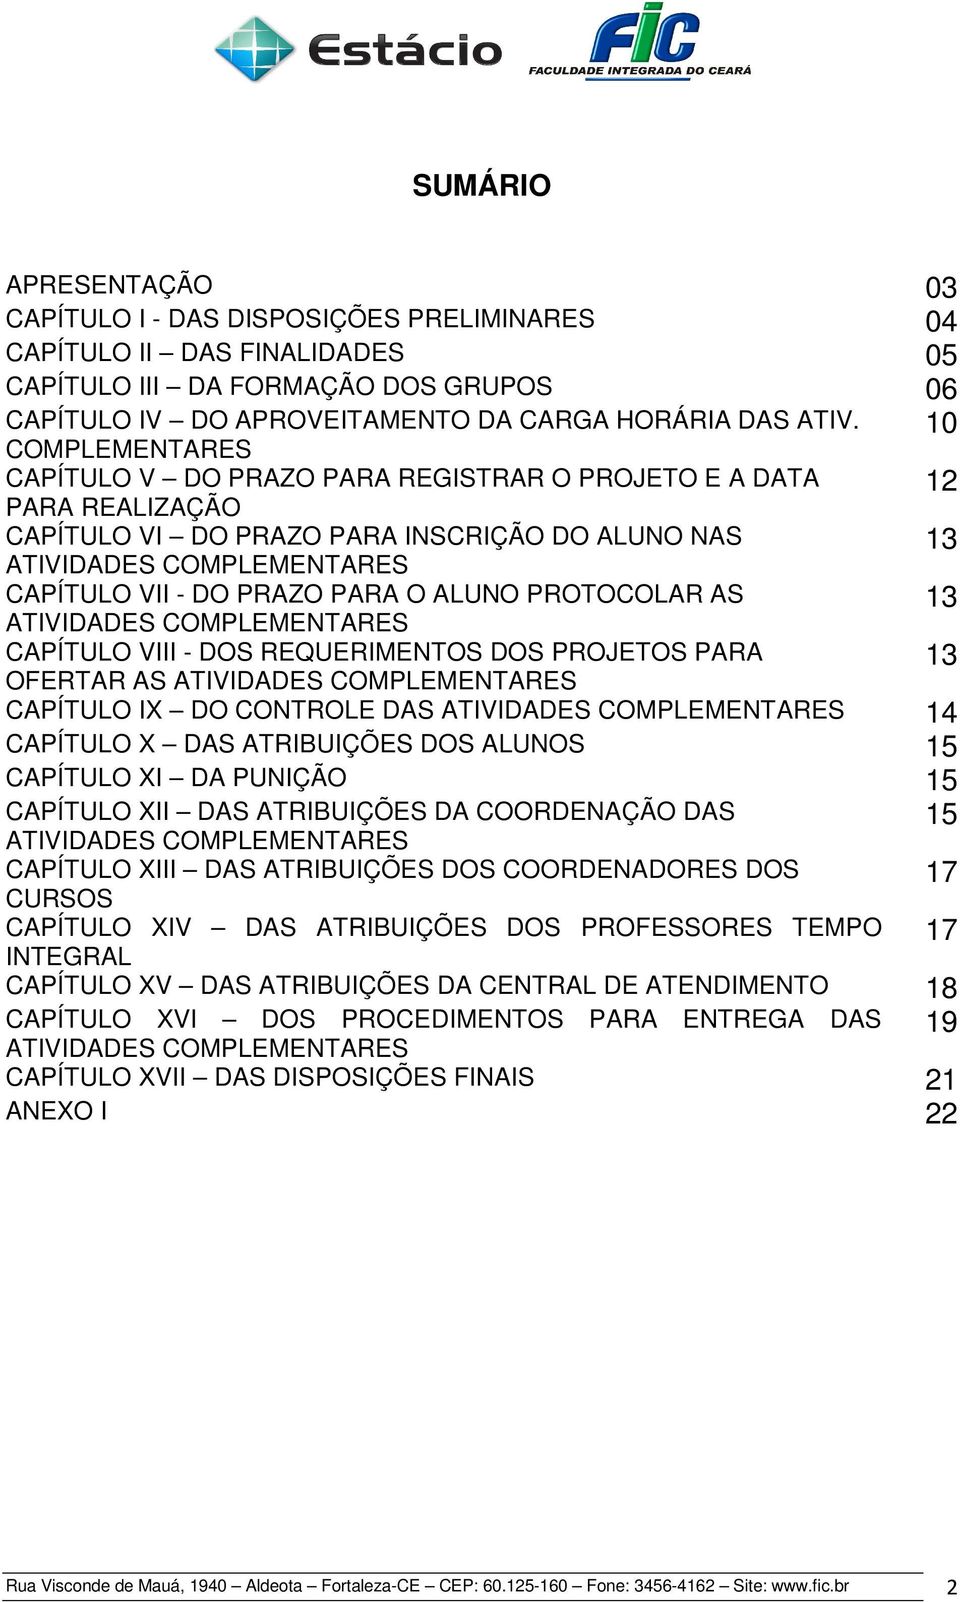 ALUNO PROTOCOLAR AS ATIVIDADES COMPLEMENTARES 13 CAPÍTULO VIII - DOS REQUERIMENTOS DOS PROJETOS PARA OFERTAR AS ATIVIDADES COMPLEMENTARES 13 CAPÍTULO IX DO CONTROLE DAS ATIVIDADES COMPLEMENTARES 14